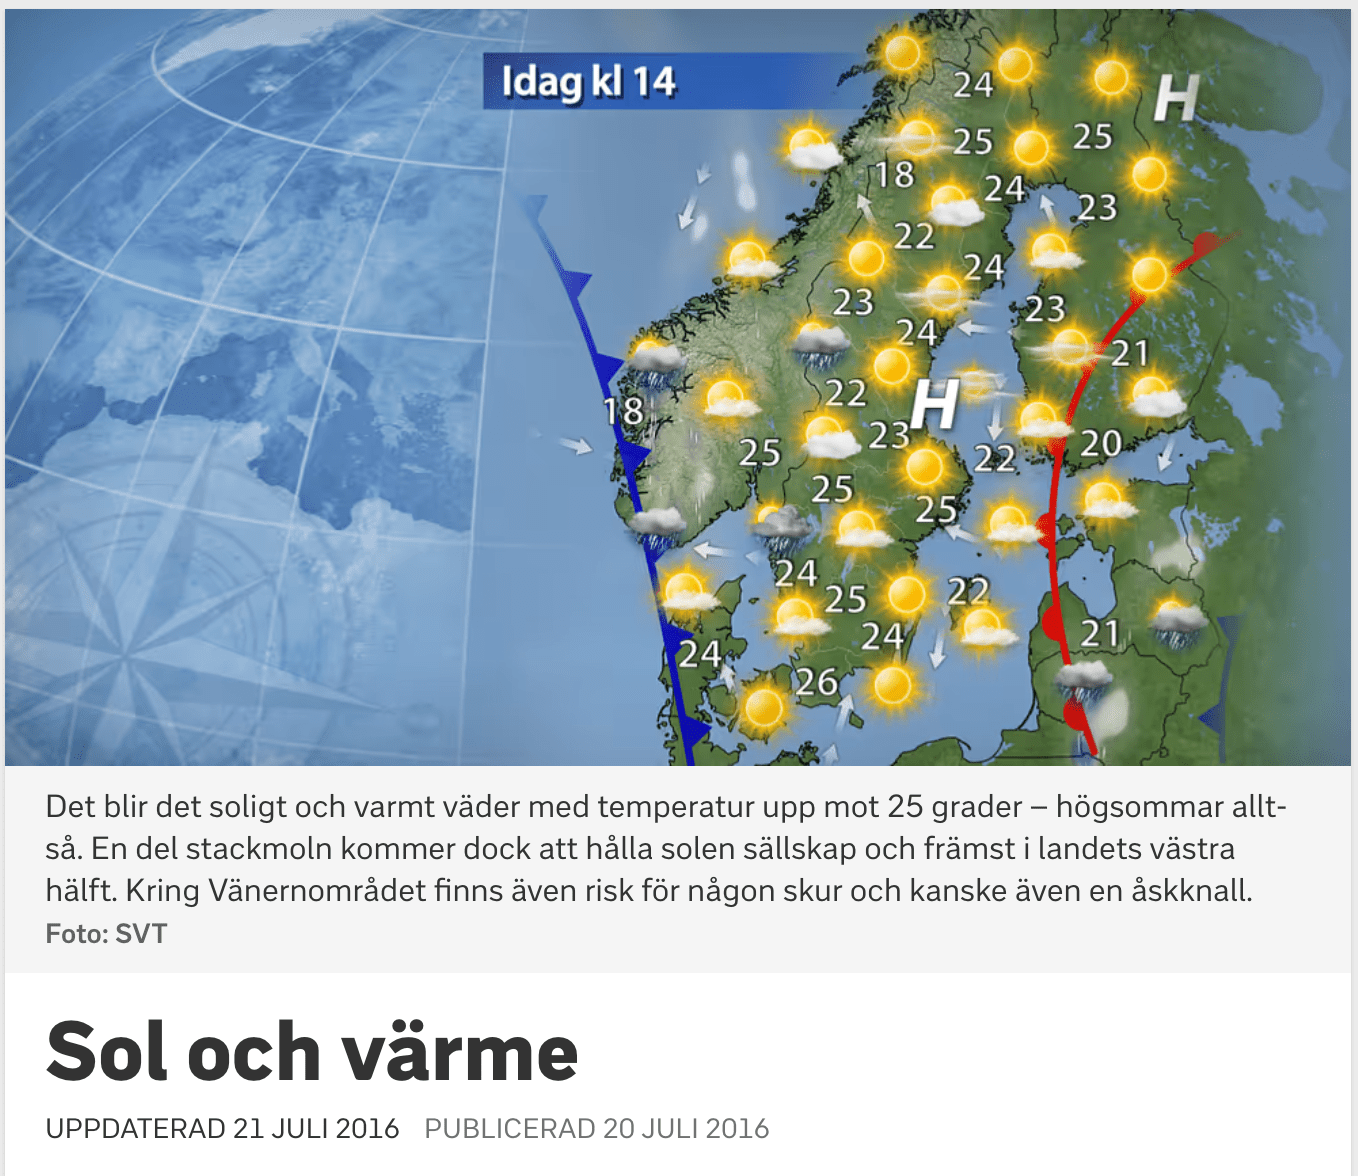 Zrzut ekranu ze strony szwedzkiej telewizji SVT, z której pochodzi mapa wykorzystana do szerzenia zmanipulowanych treści.